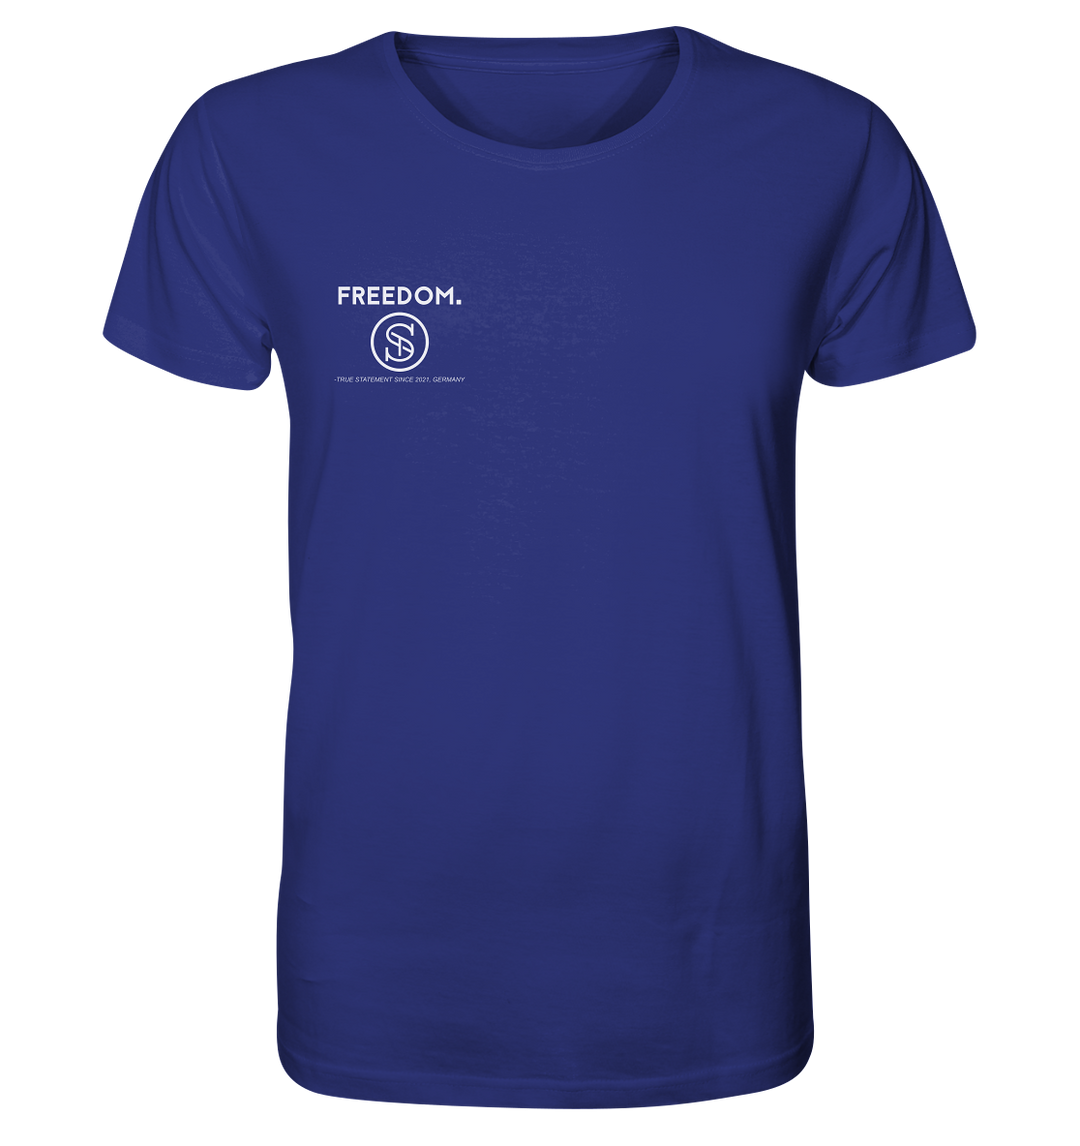 Freedom Herren - Organic Shirt Worker Blue Herren Shirt Organic Shirt True Statement